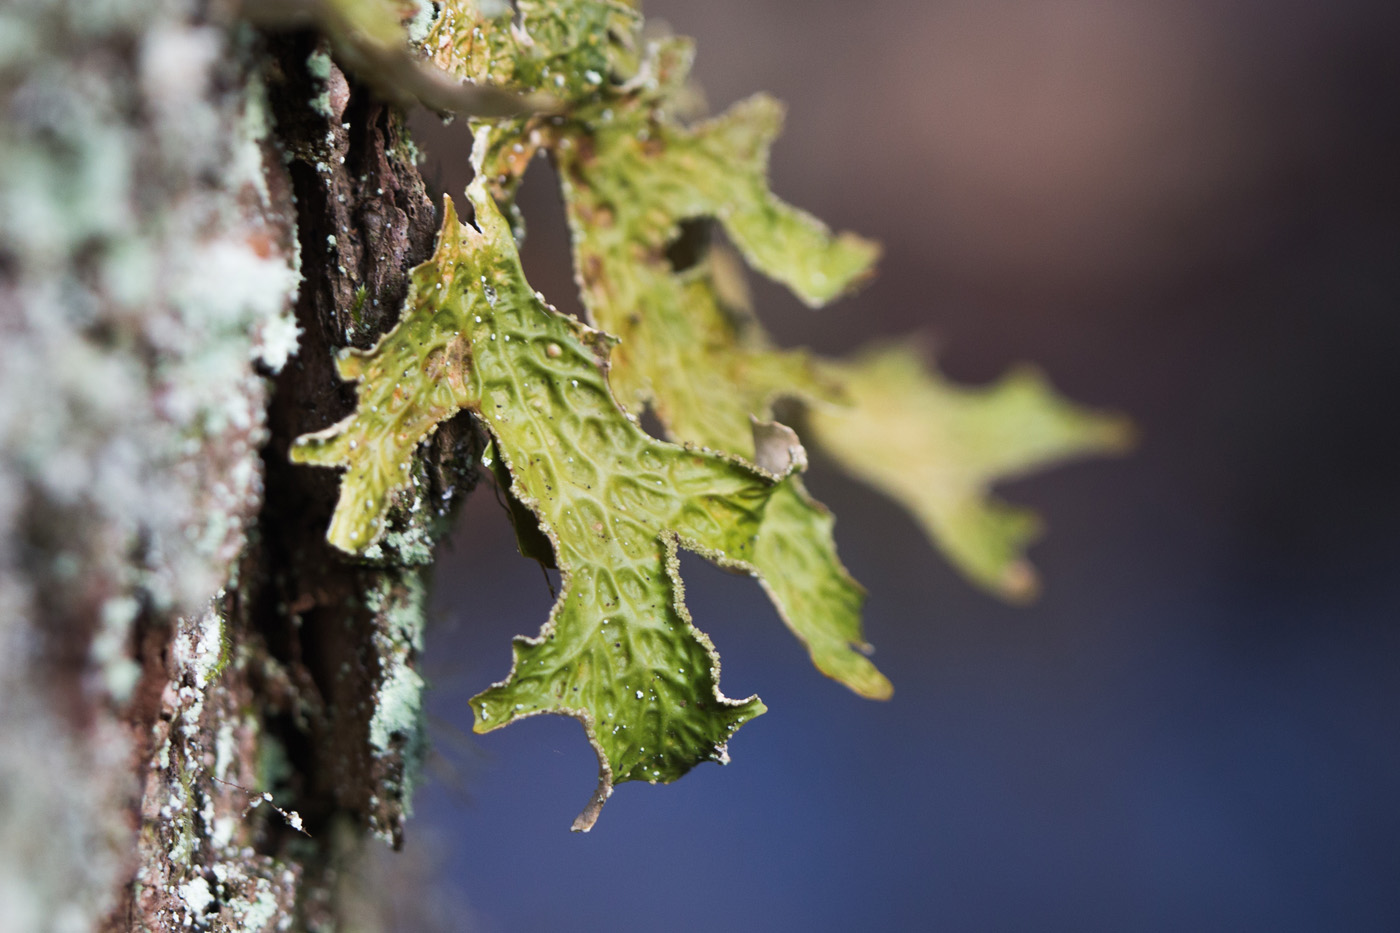 lungwort lichen growing on bark